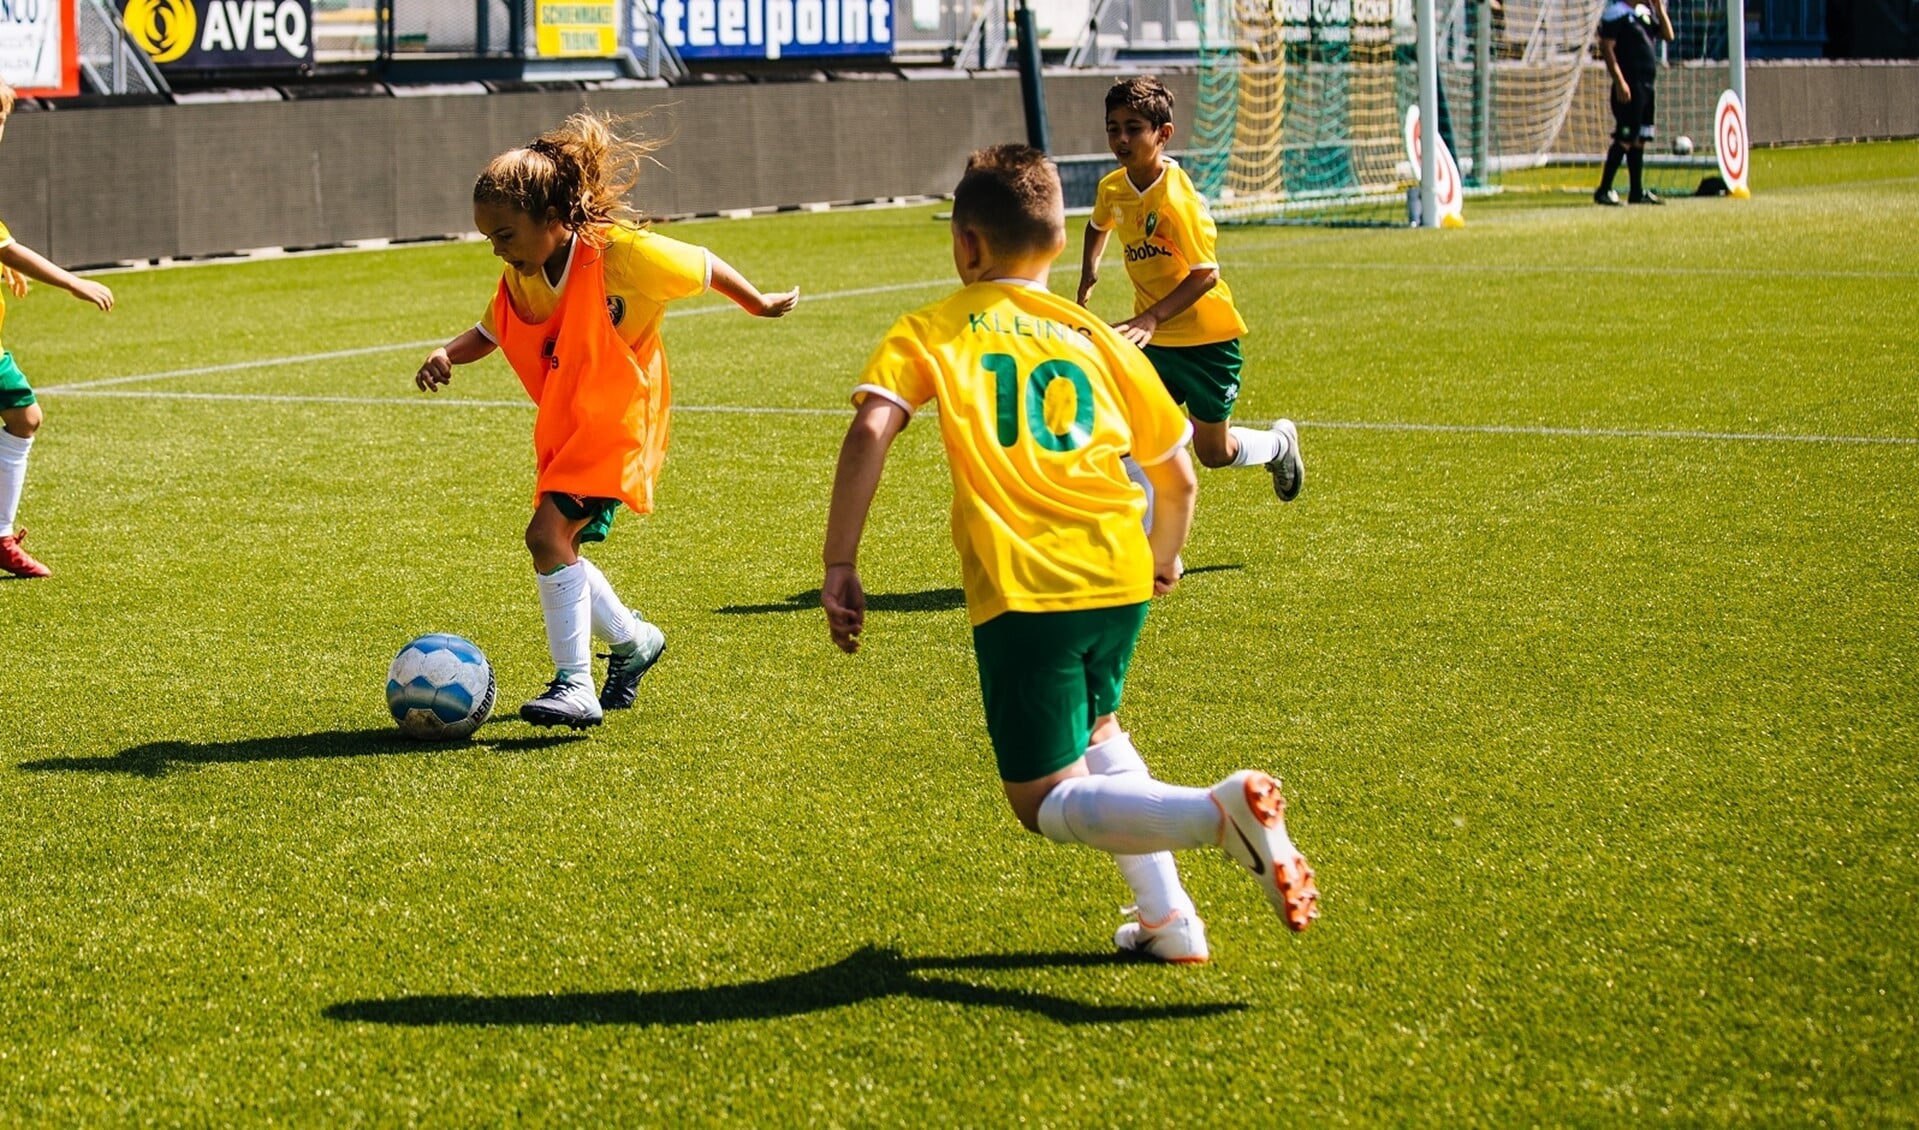 Op jeugdcomplex De Aftrap wordt op zondag 30 september begonnen met de ADO Den Haag Voetbalschool.